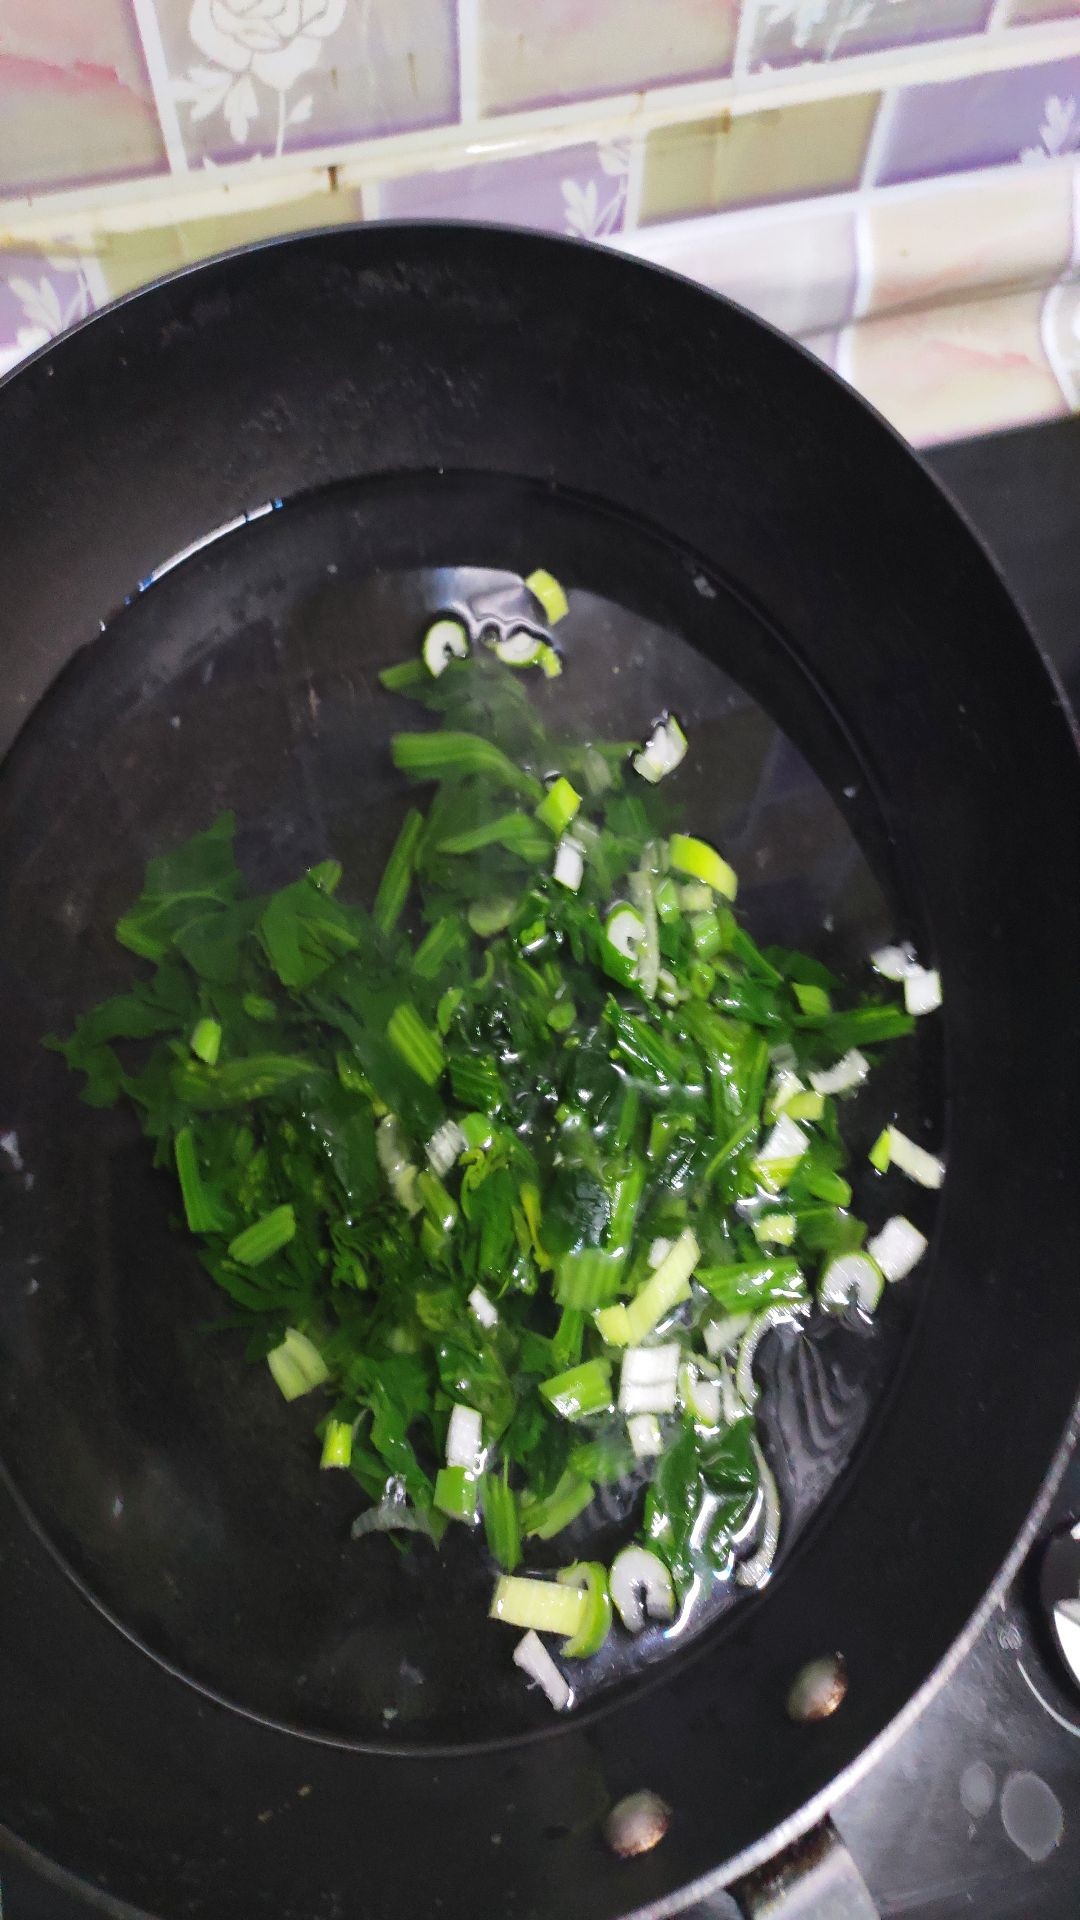 Vegetable Noodle Soup recipe